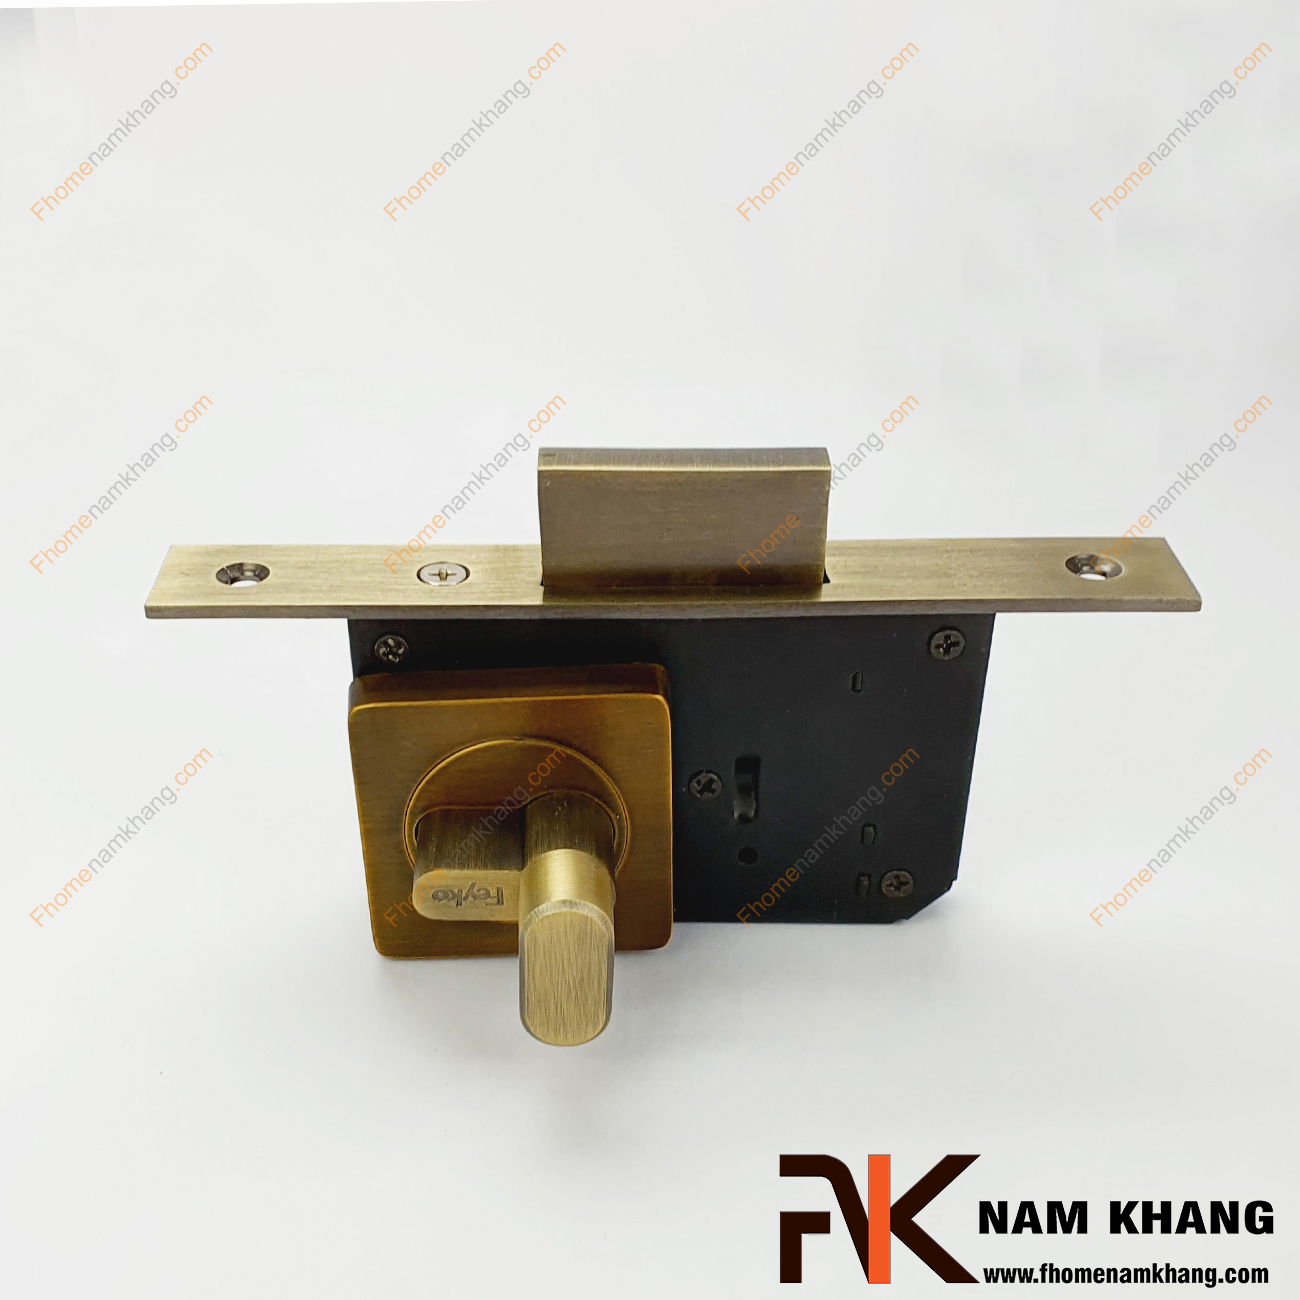 Khóa âm cửa mở bằng đồng cao cấp NK566-RX - dòng khóa cửa nhỏ gọn sử dụng được cho nhiều dạng cửa từ chất liệu gỗ đến nhôm, inox,...Đặc trưng của dòng khóa cửa này ở sự nhỏ gọn, tiện lợi, không quá nhiều chi tiết nhưng vẫn đảm bảo độ thâm mĩ và an toàn cao.